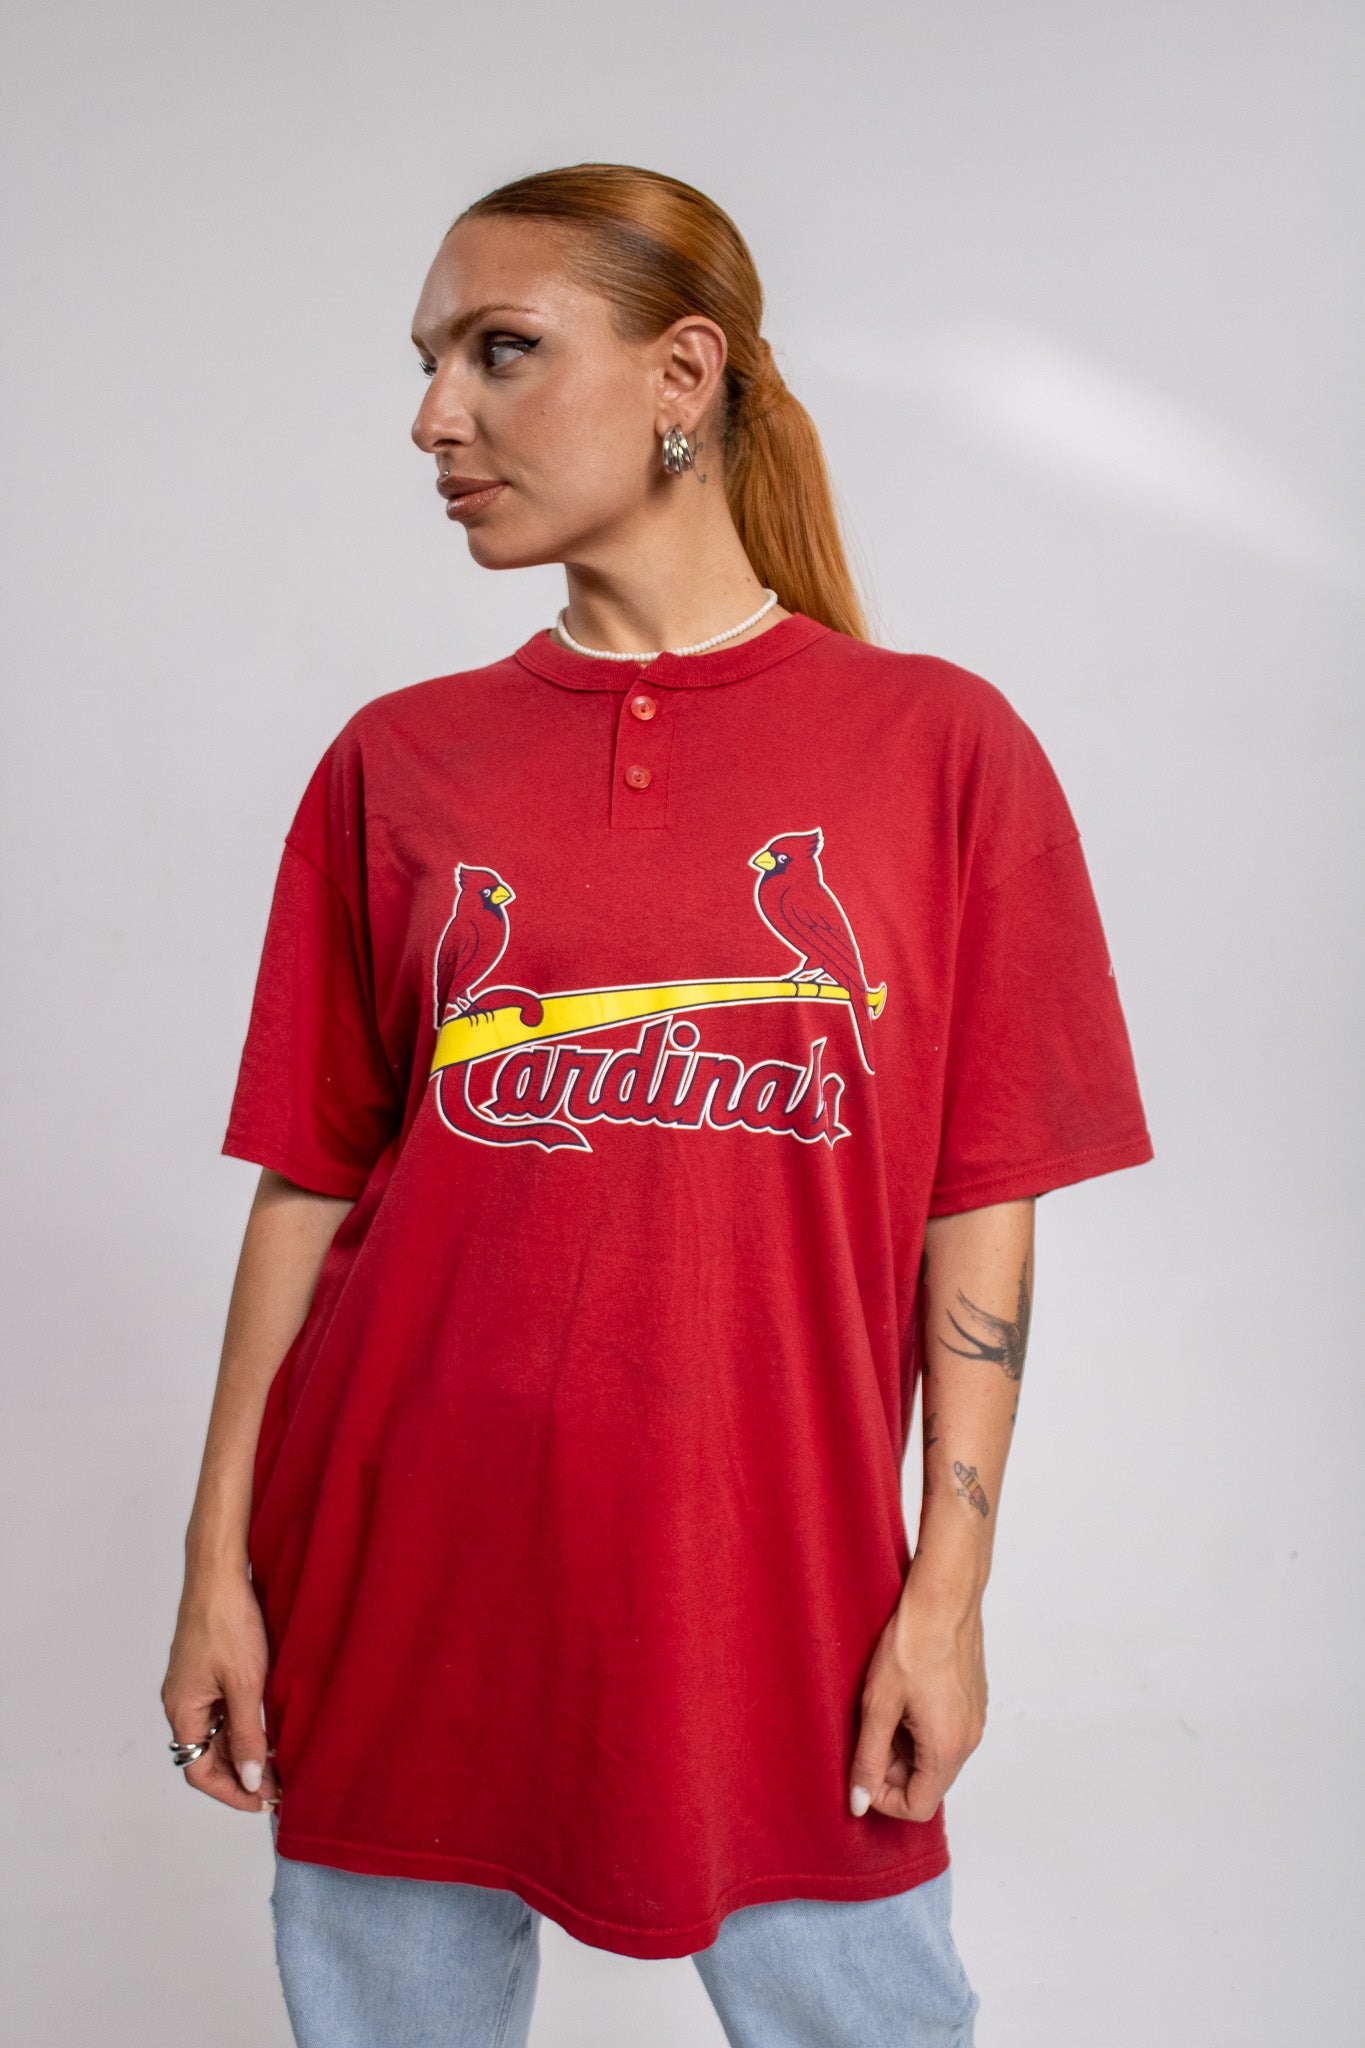 St. Louis Cardinals T-shirt